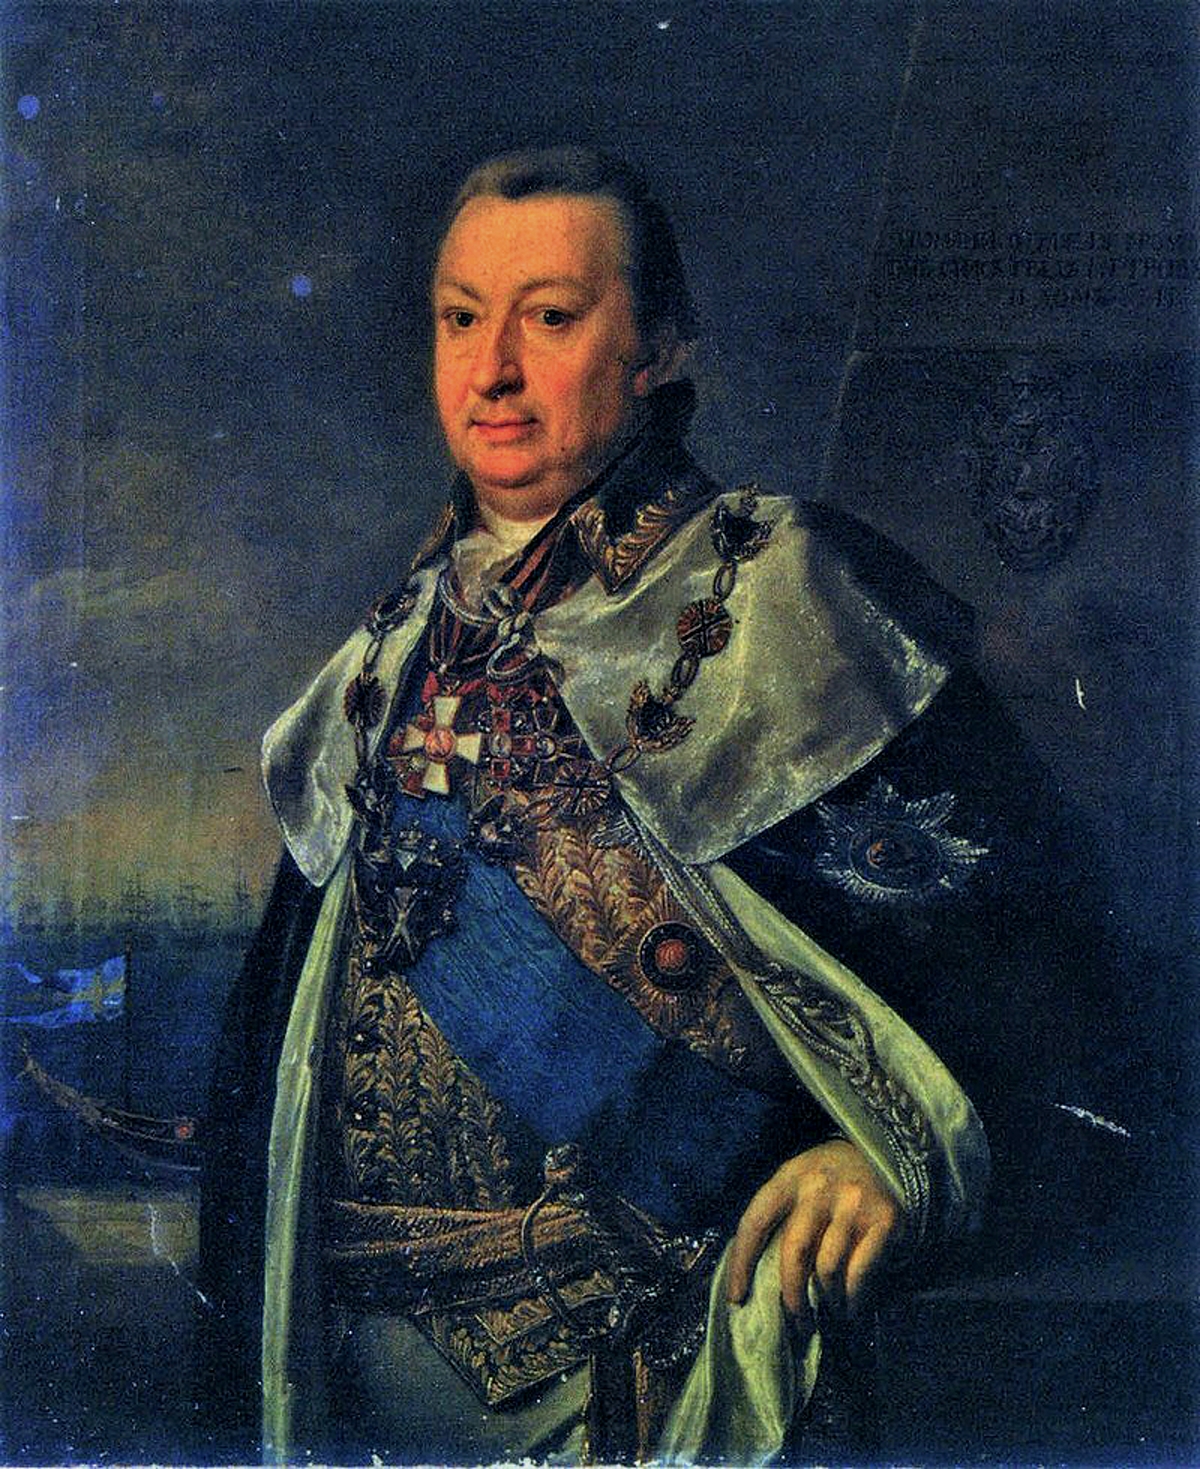 Вице-адмирал А.И. Круз. Портрет неизвестного художника